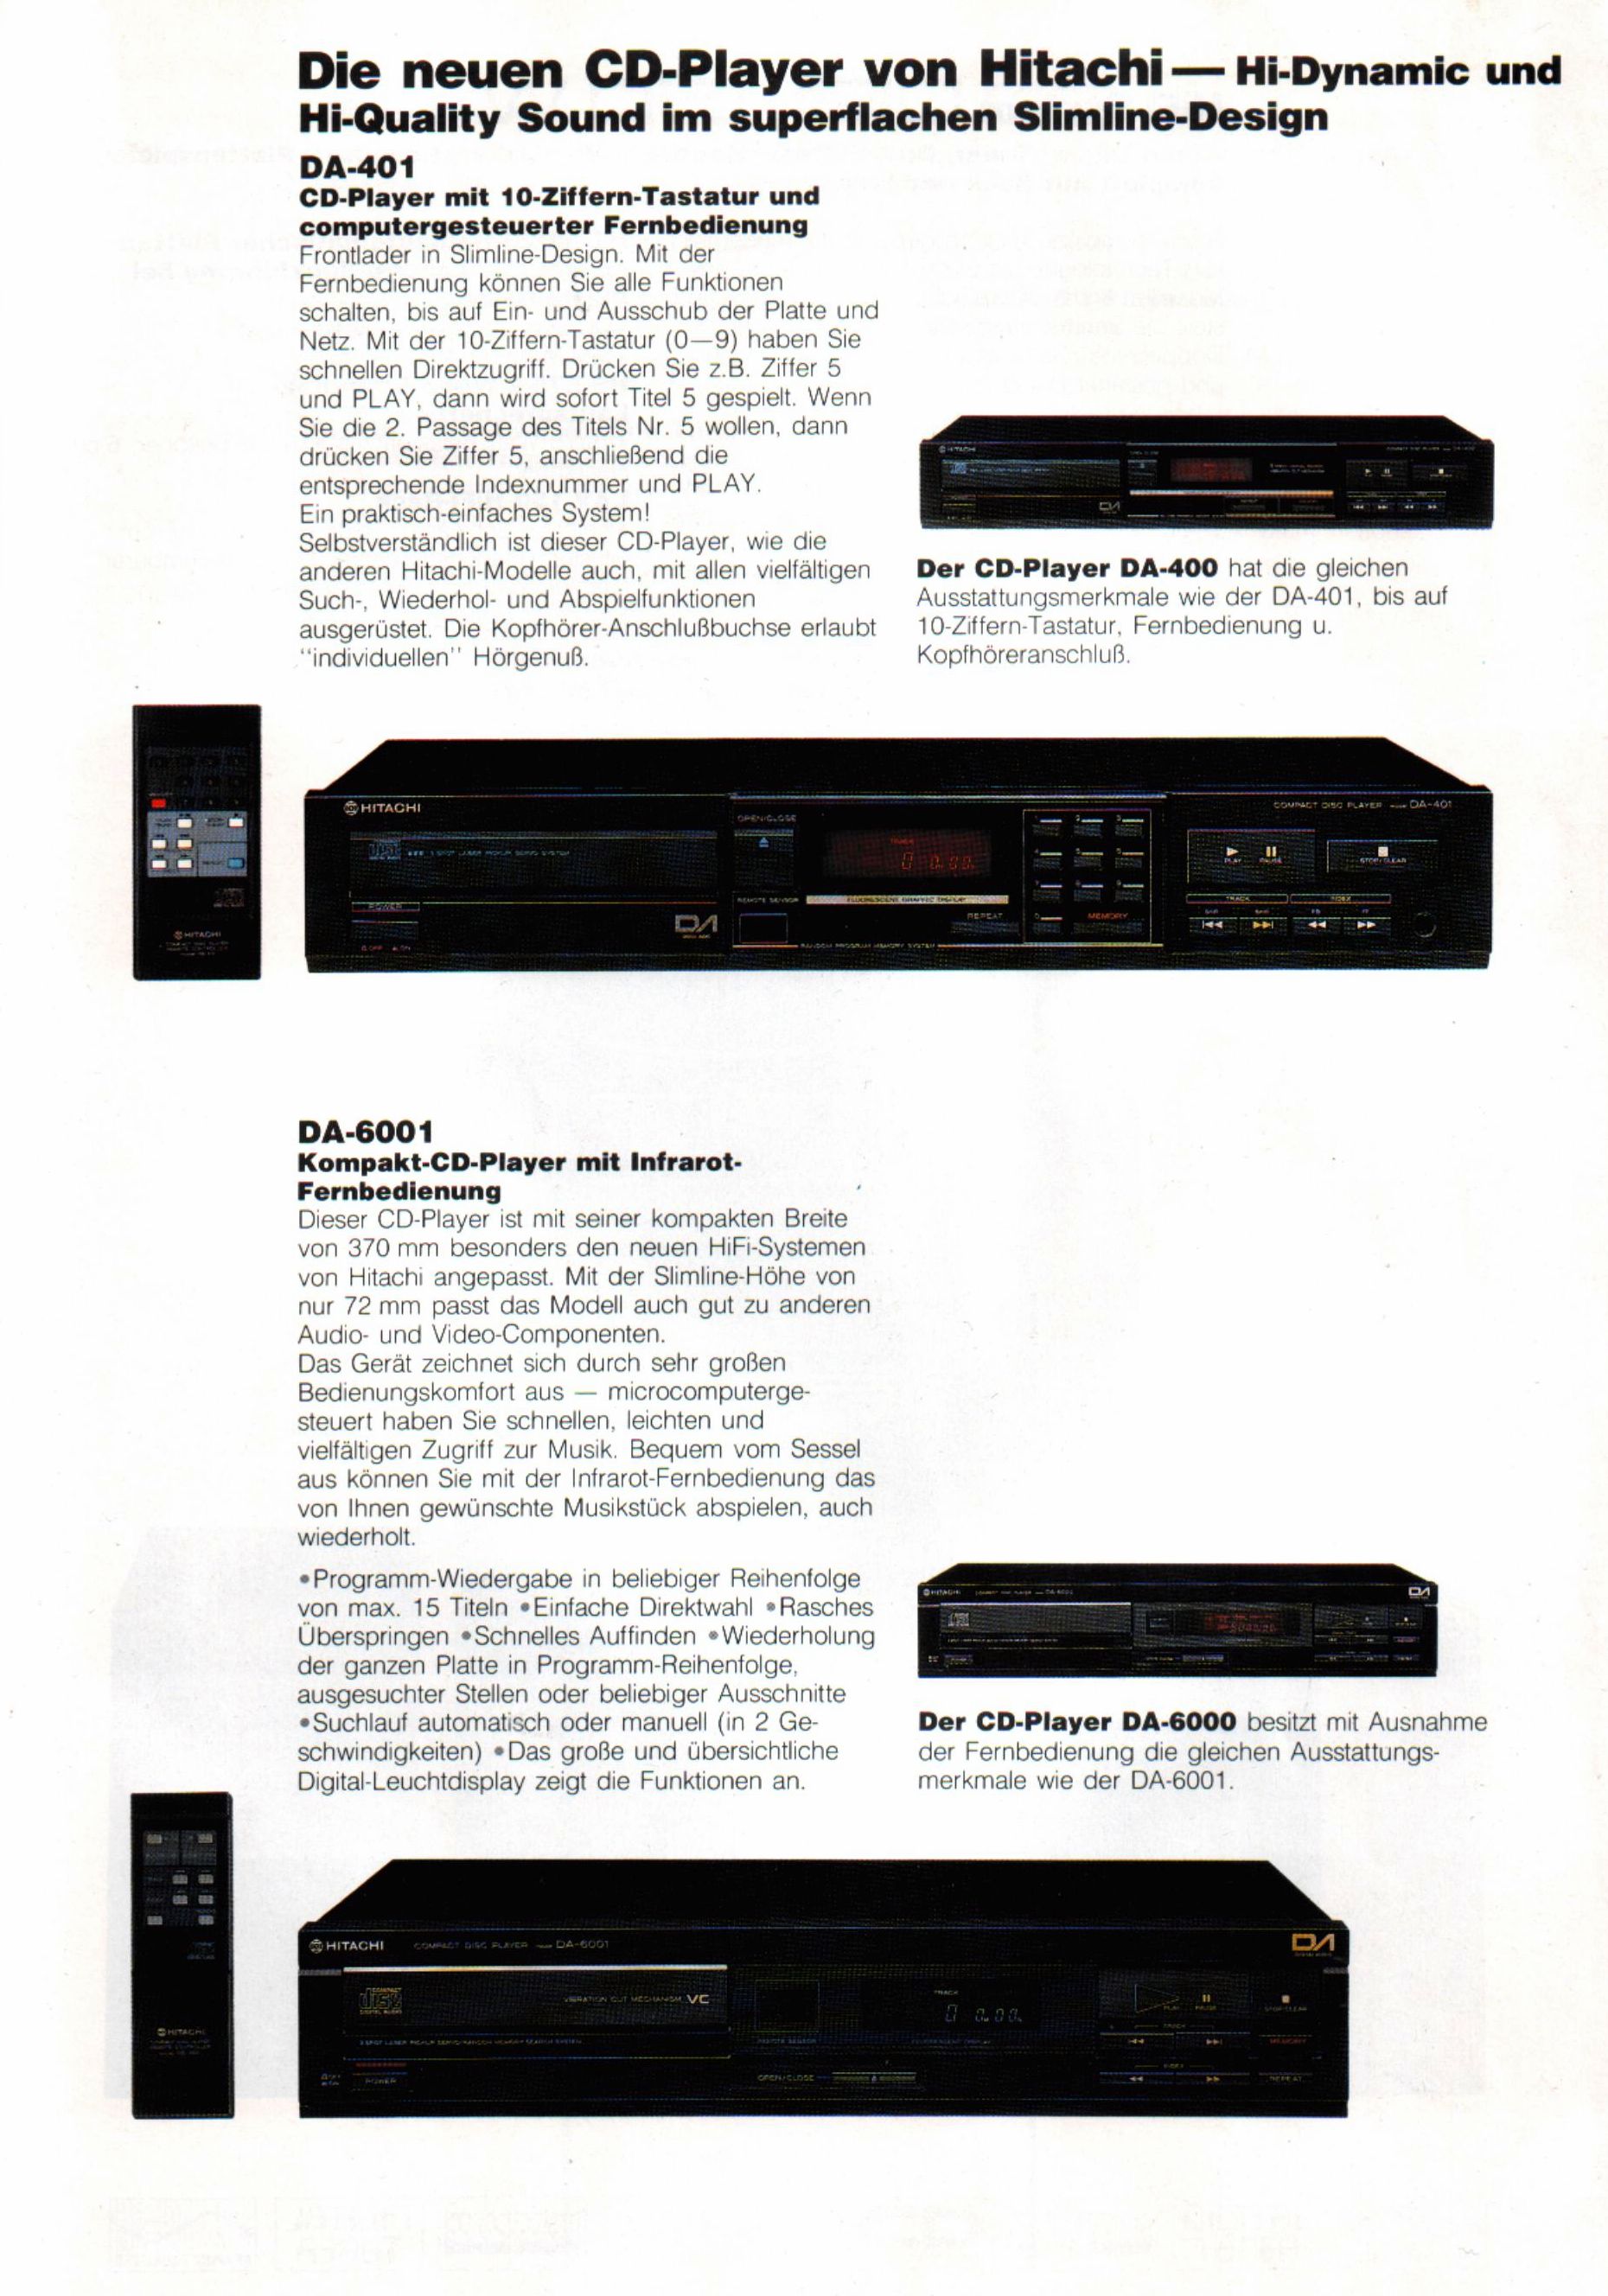 Hitachi DA-400-6000-Prospekt-1986.jpg